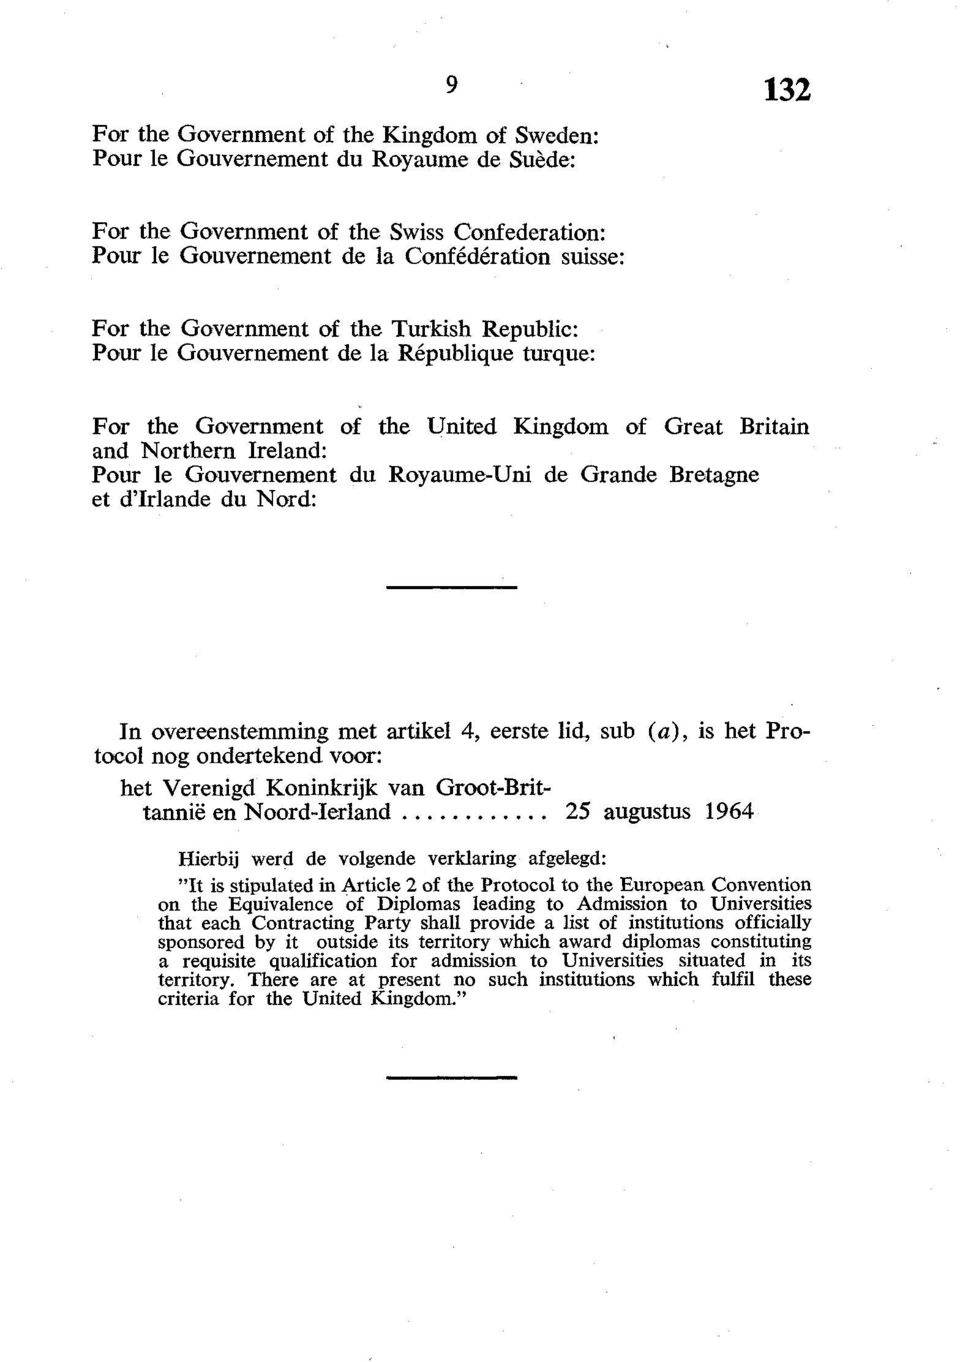 de Grande Bretagne et d'irlande du Nord: In overeenstemming met artikel 4, eerste lid, sub (a), is het Protocol nog ondertekend voor: het Verenigd Koninkrijk van Groot-Brittannië en Noord-Ierland 25